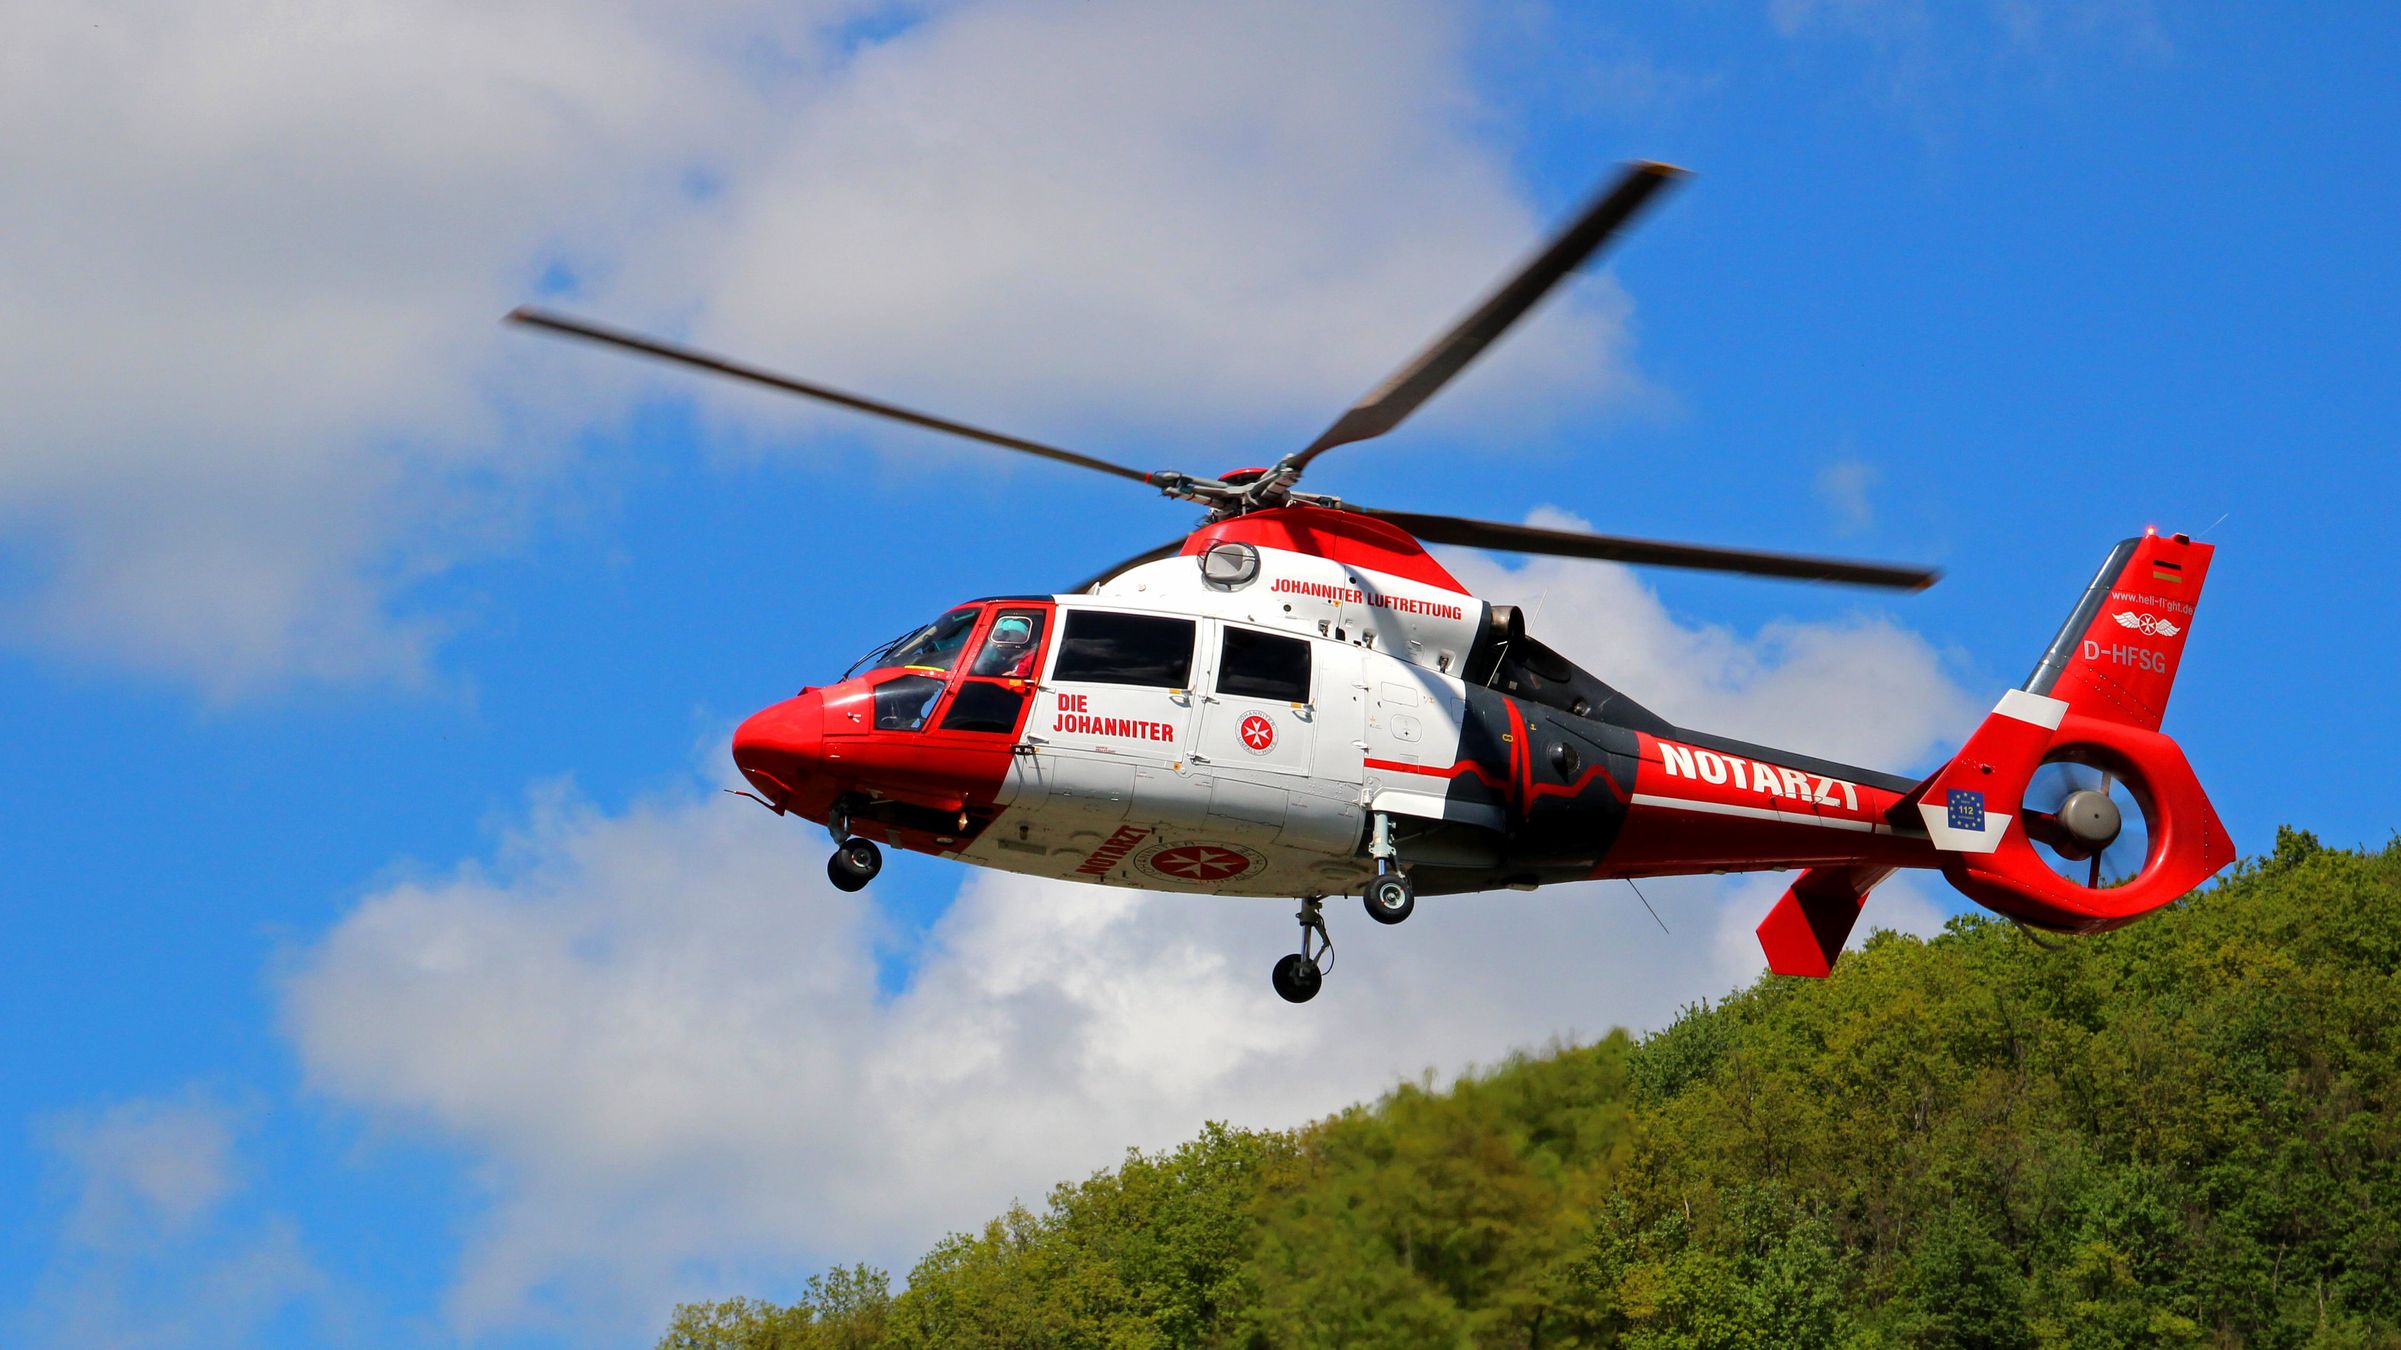 紧急救援的直升机翱翔蓝天实力抢镜高清壁纸